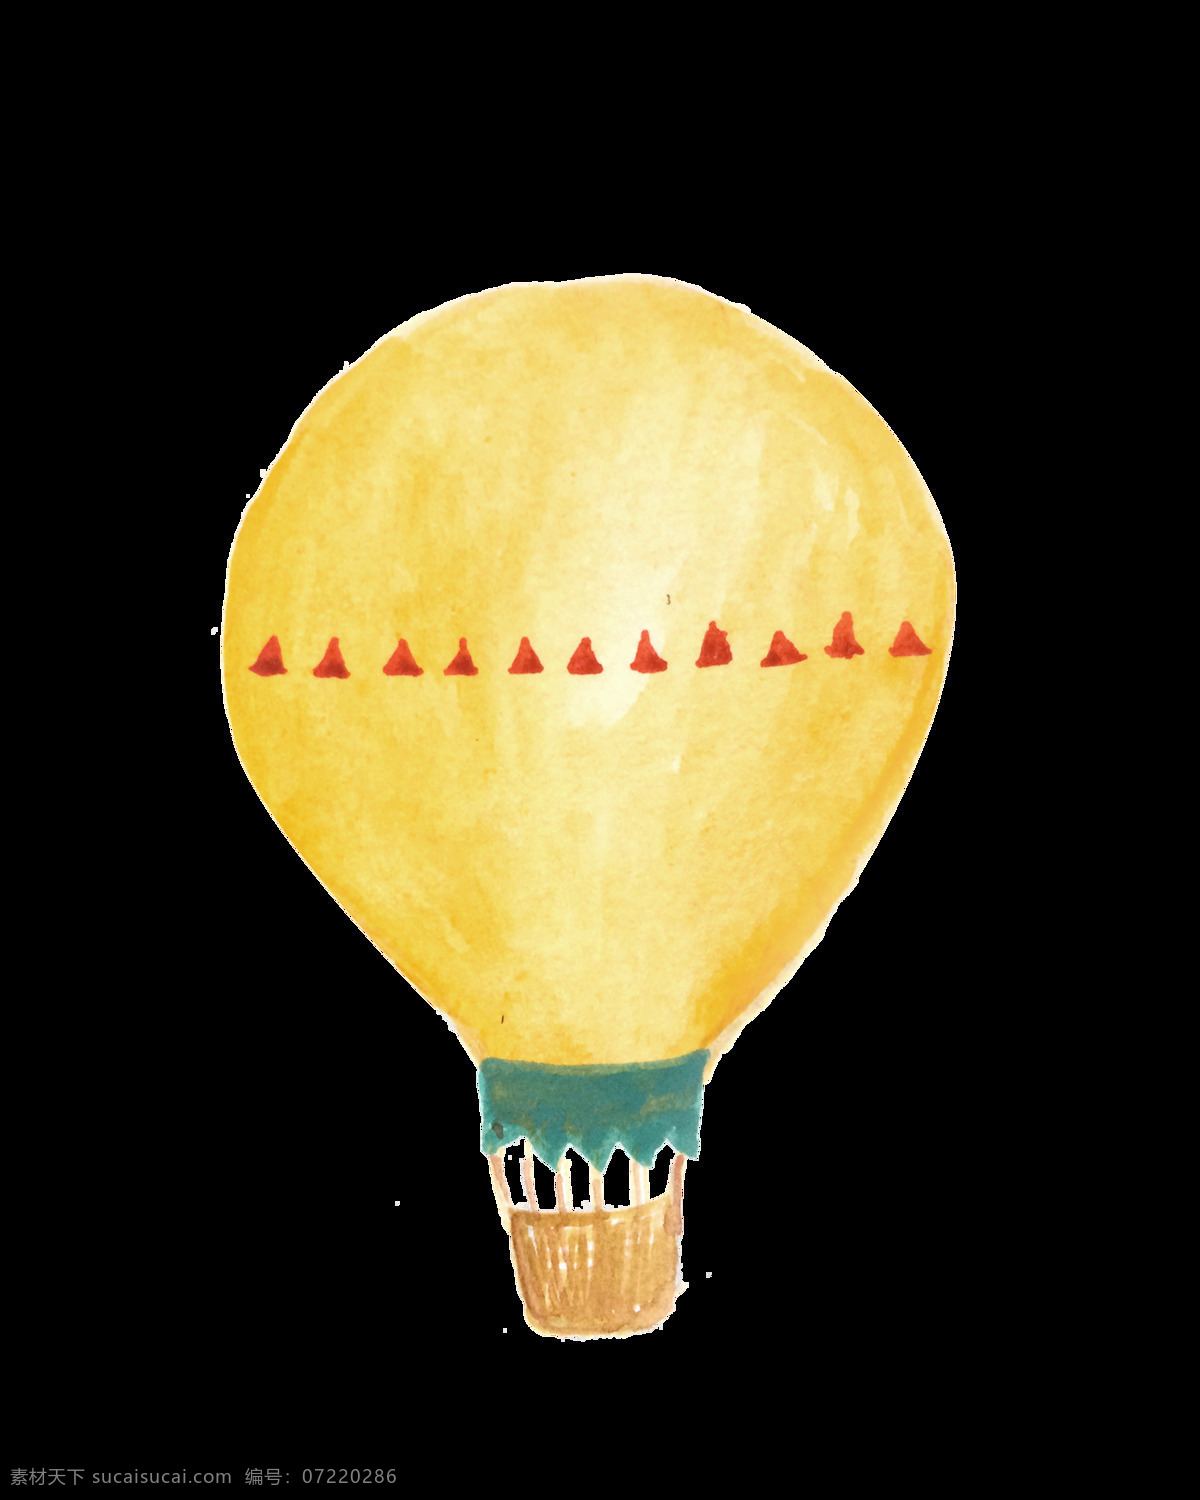 黄色 小 三角 热气球 卡通 透明 简约 美丽 可爱